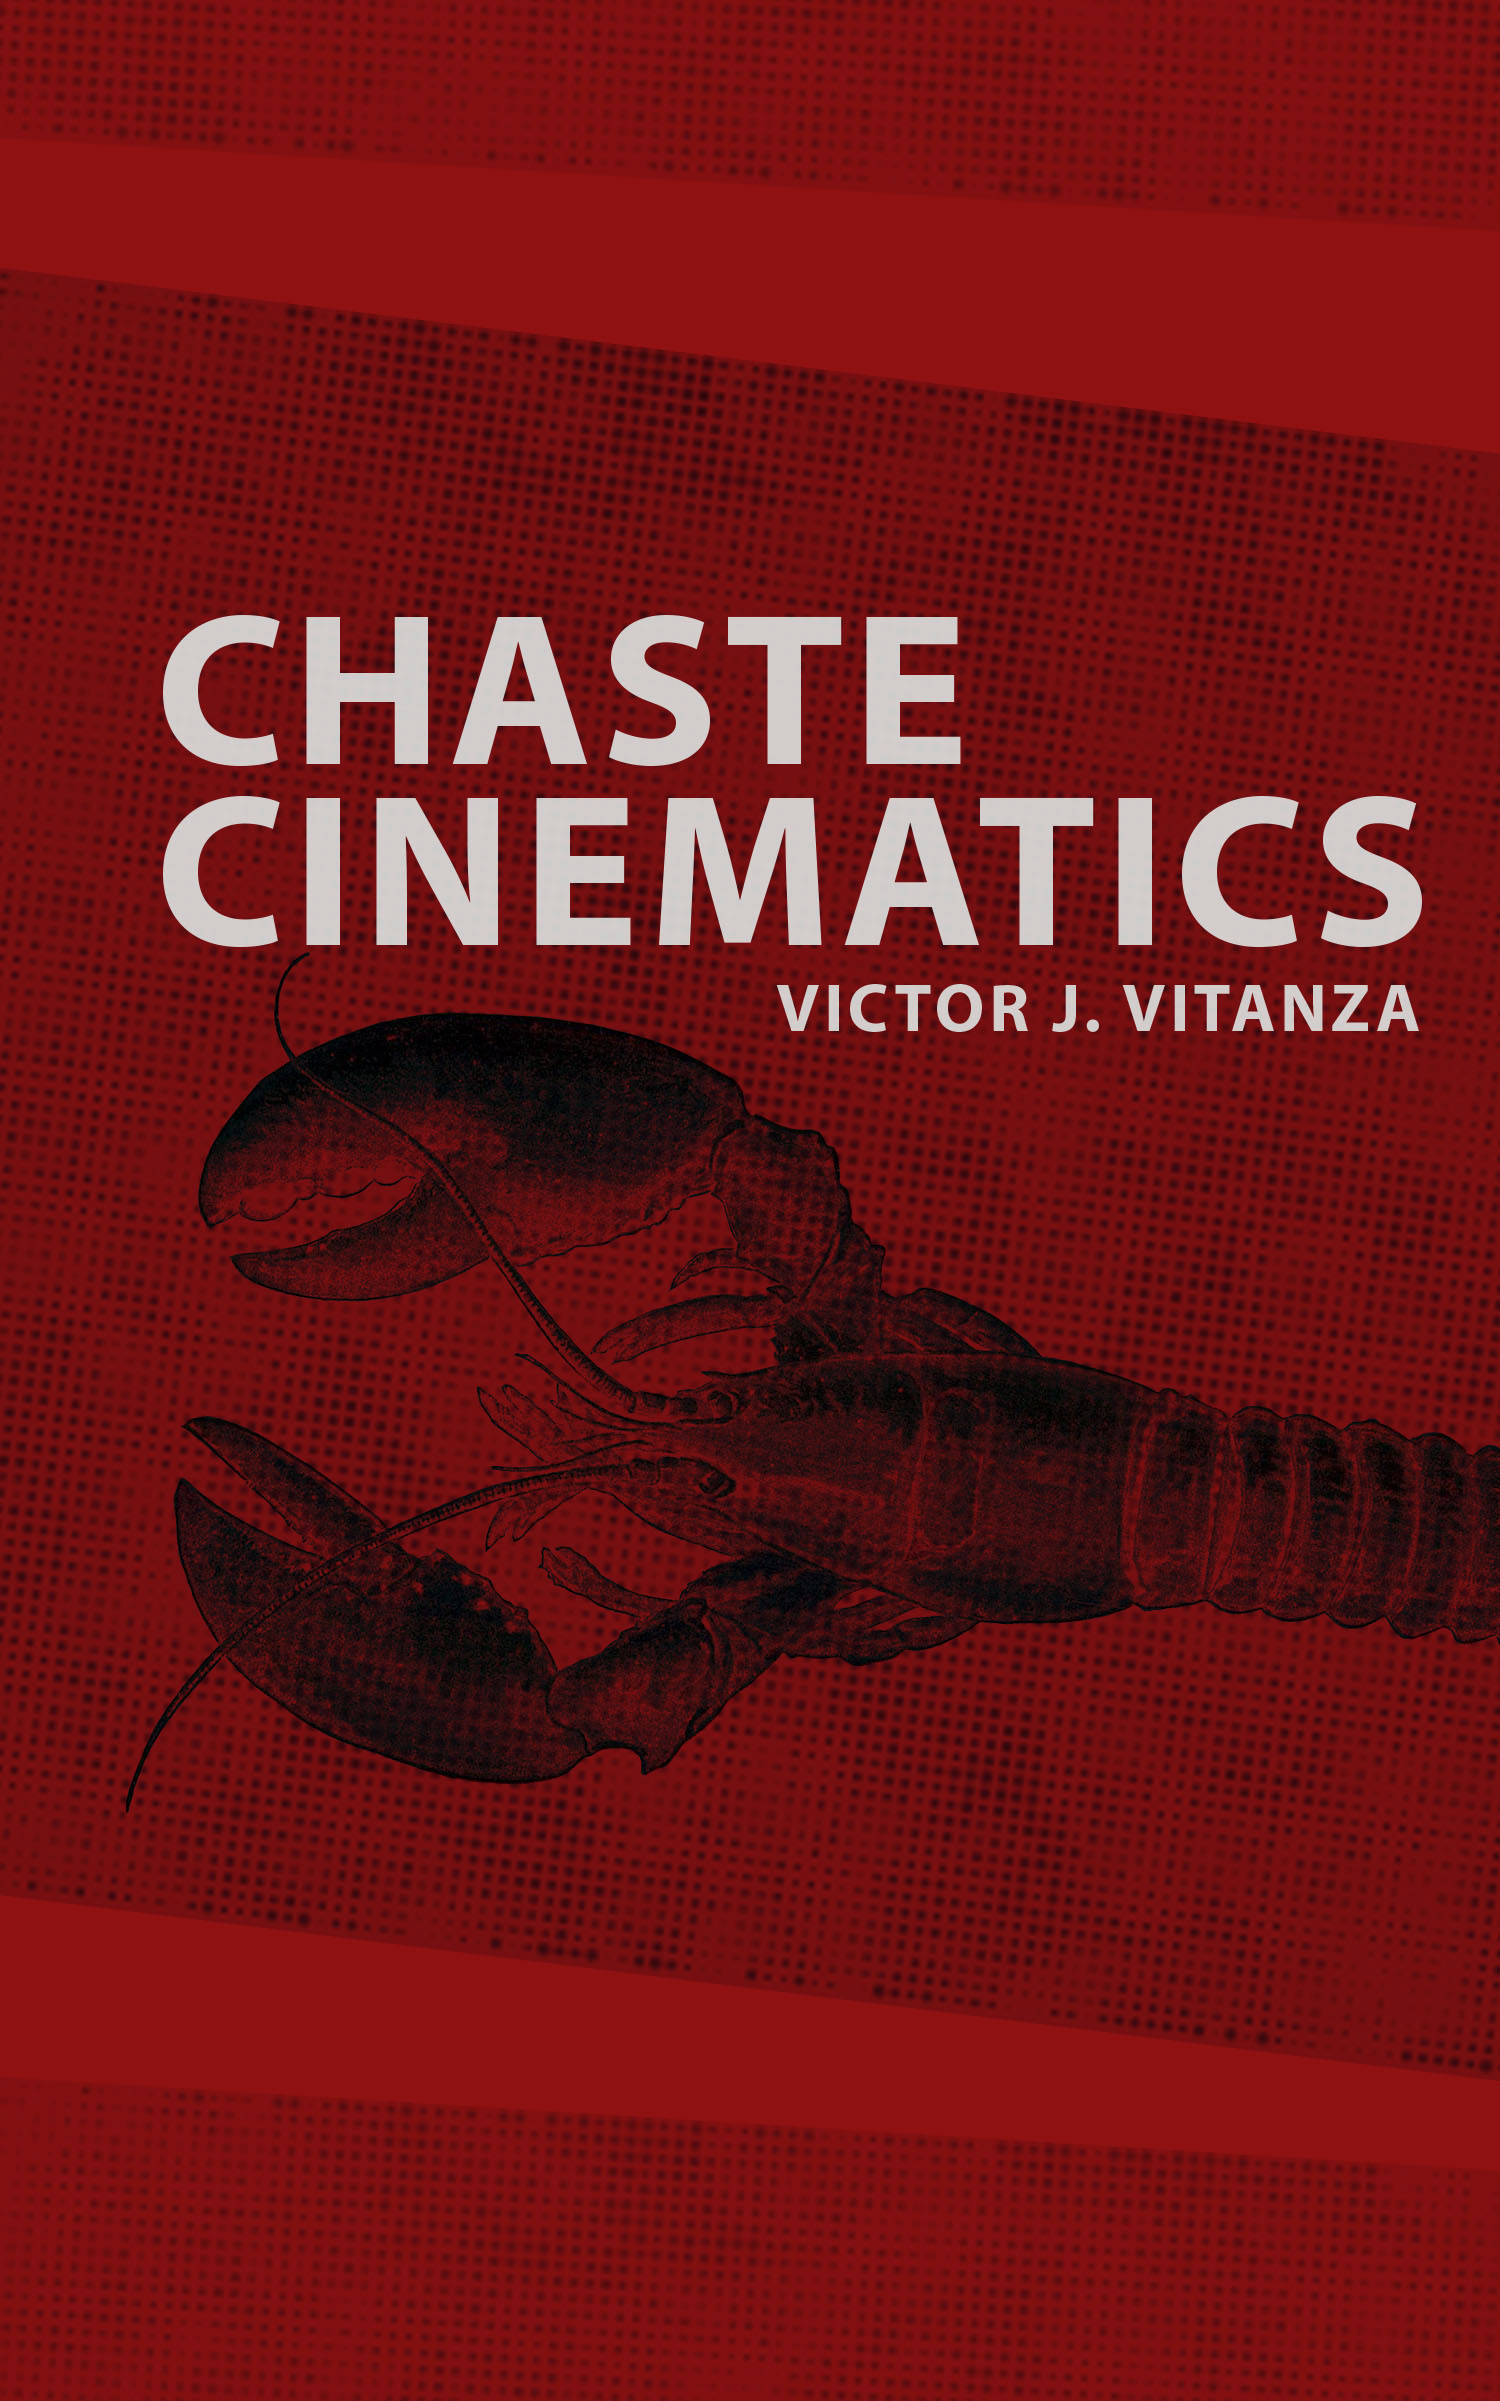 Chaste Cinematics (punctum books, 2015)